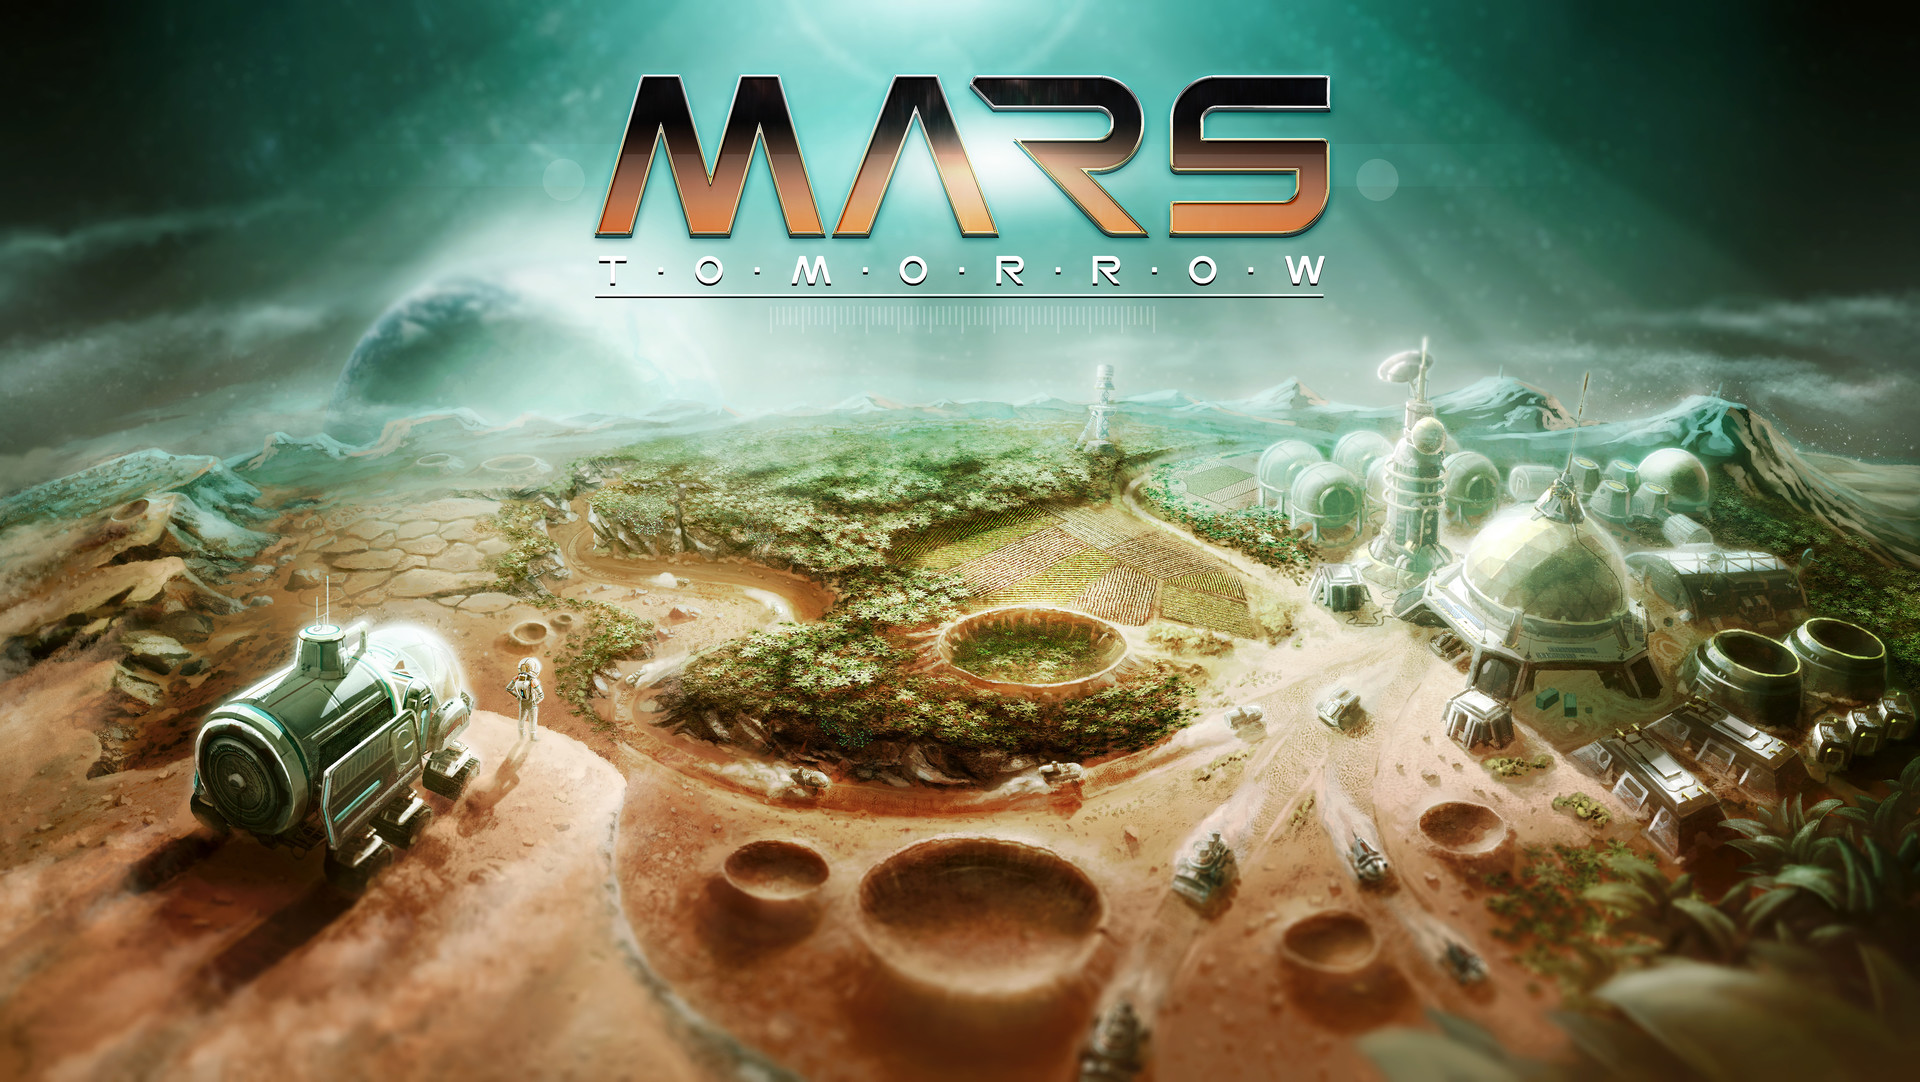 Игра терраформирование планет. Колонизация Марса игра. Игра про Терраформирование планет. Игра про Марс стратегия. Игры про колонизацию планет.